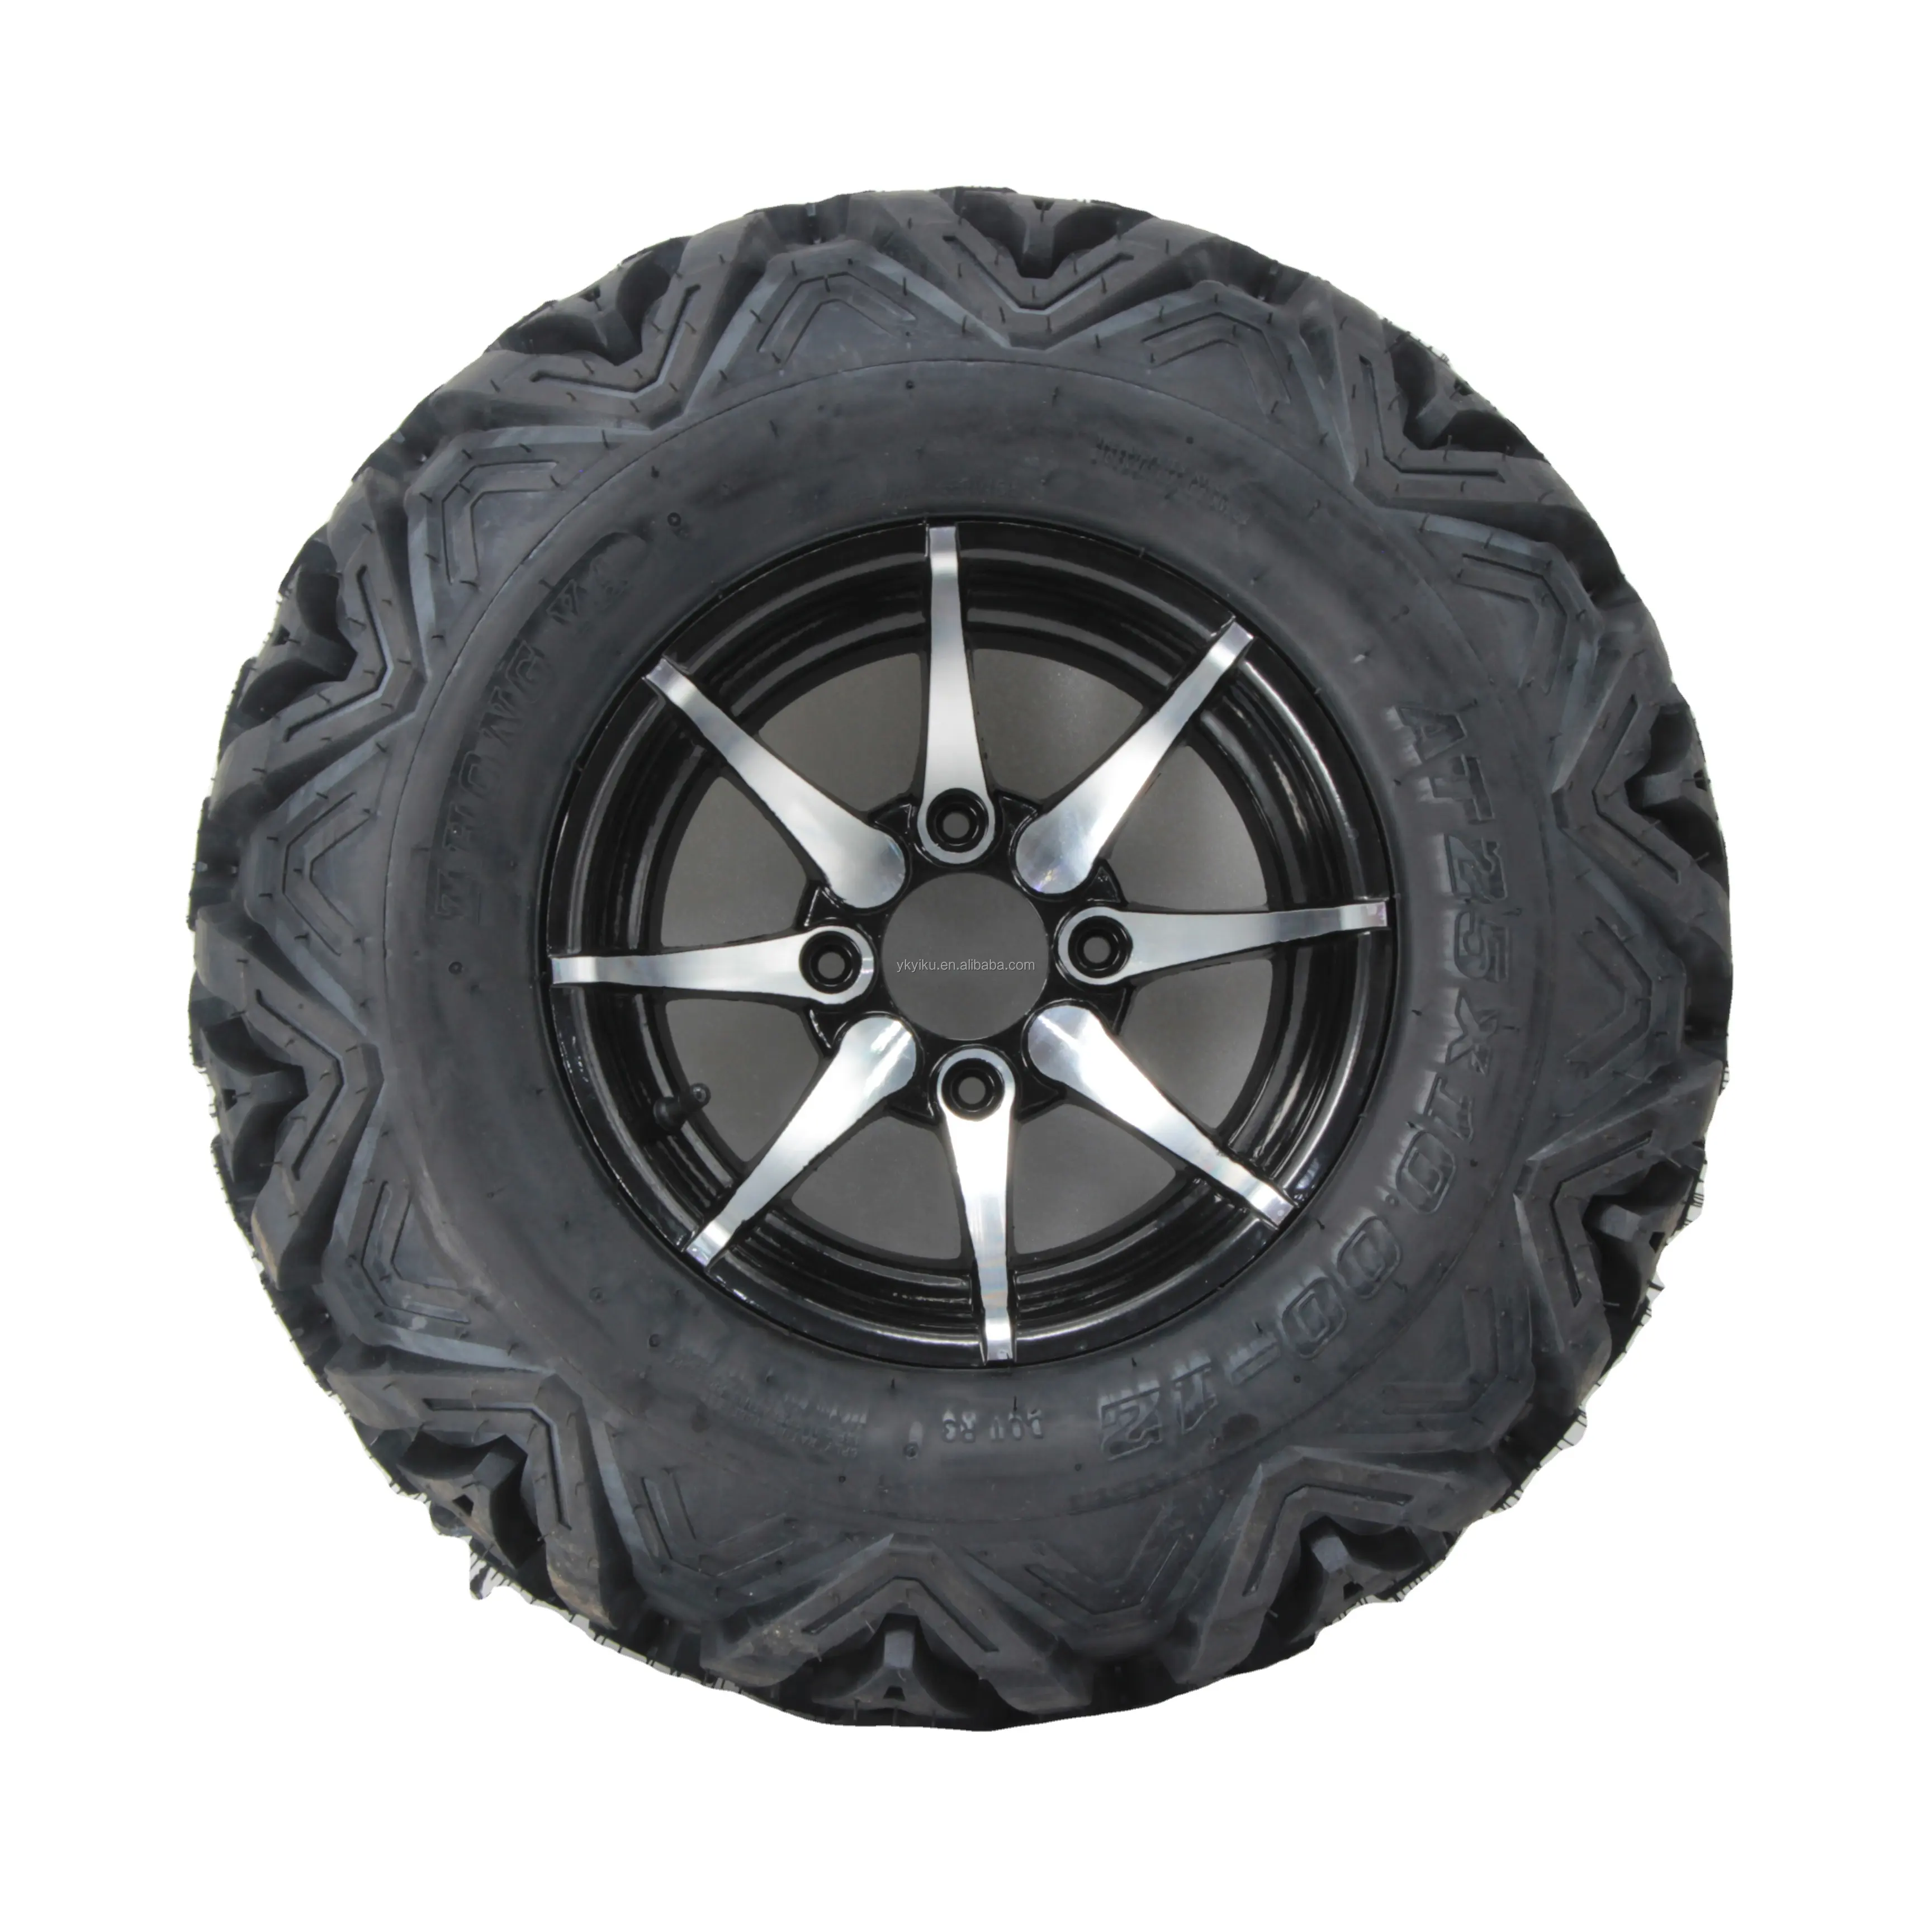 Vente en gros de pneus ATV 25x10-12 25x8-12 25x8-12 Pièces personnalisées pour pneus et jantes ATV Accessoriestire